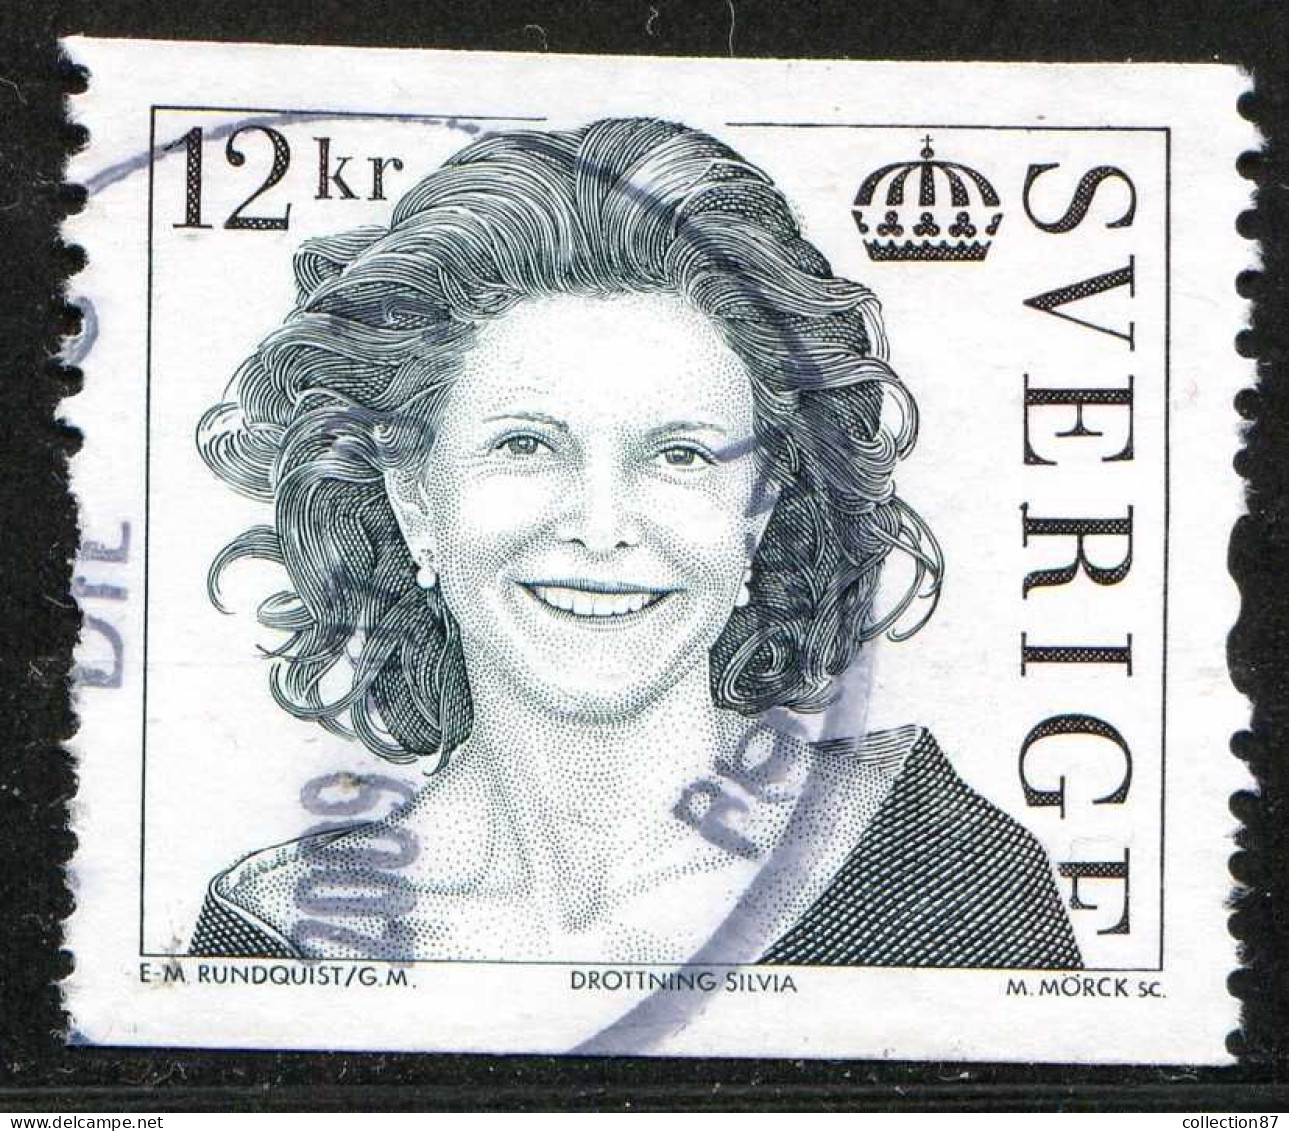 Réf 77 < SUEDE < Yvert N° 2695 Ø < Année 2009 Used < SWEDEN < Reine Sylvia - Used Stamps